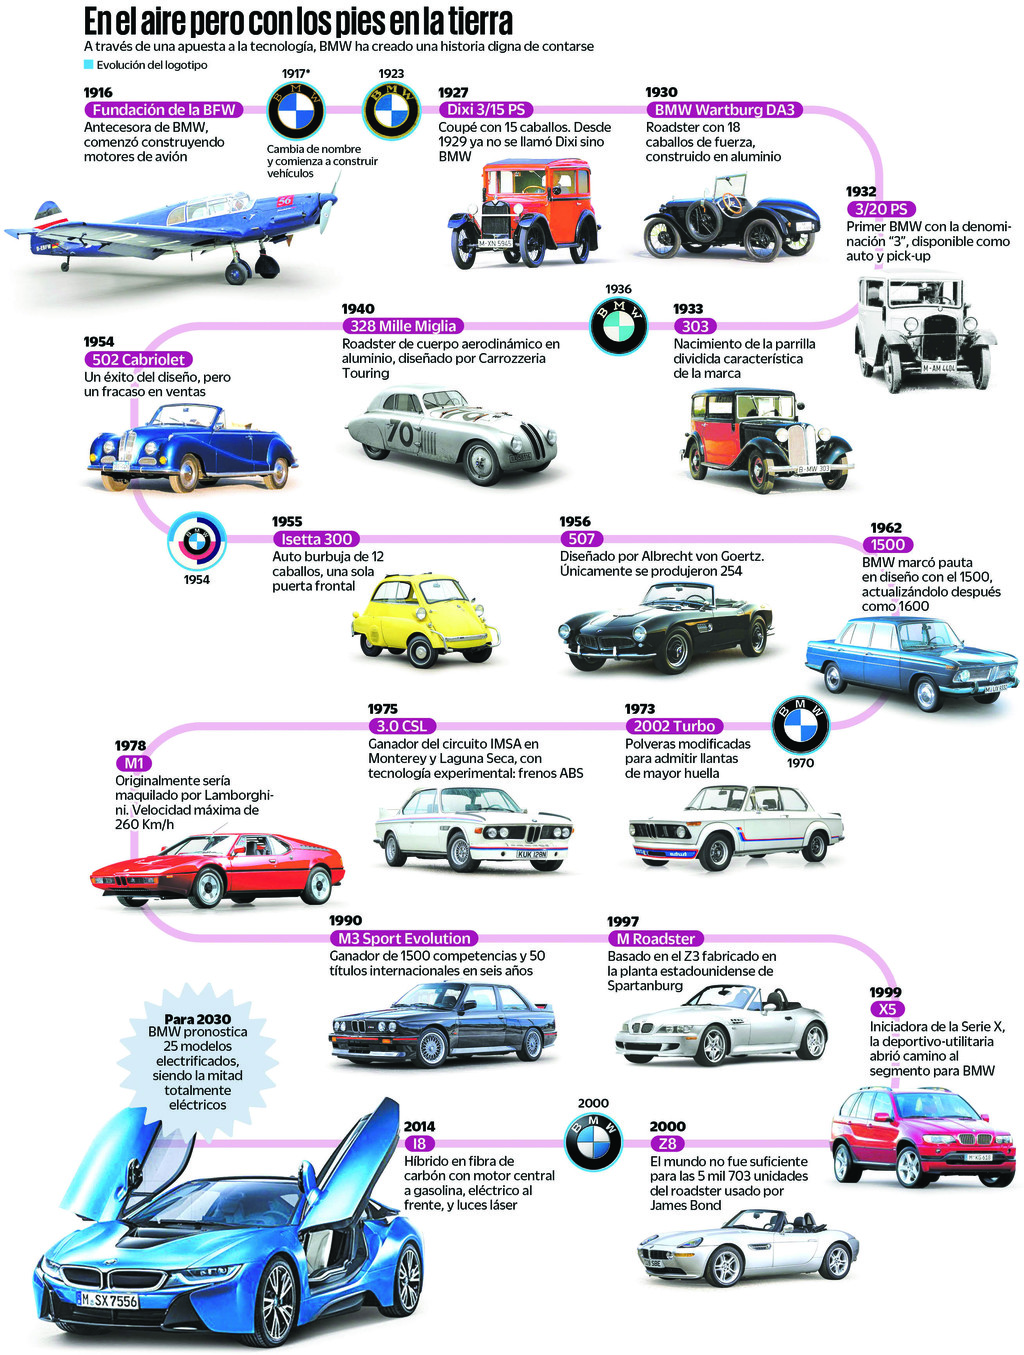 La historia de BMW es la de una empresa asentada en cada momento histórico que ha afrontado. (EL UNIVERSAL)